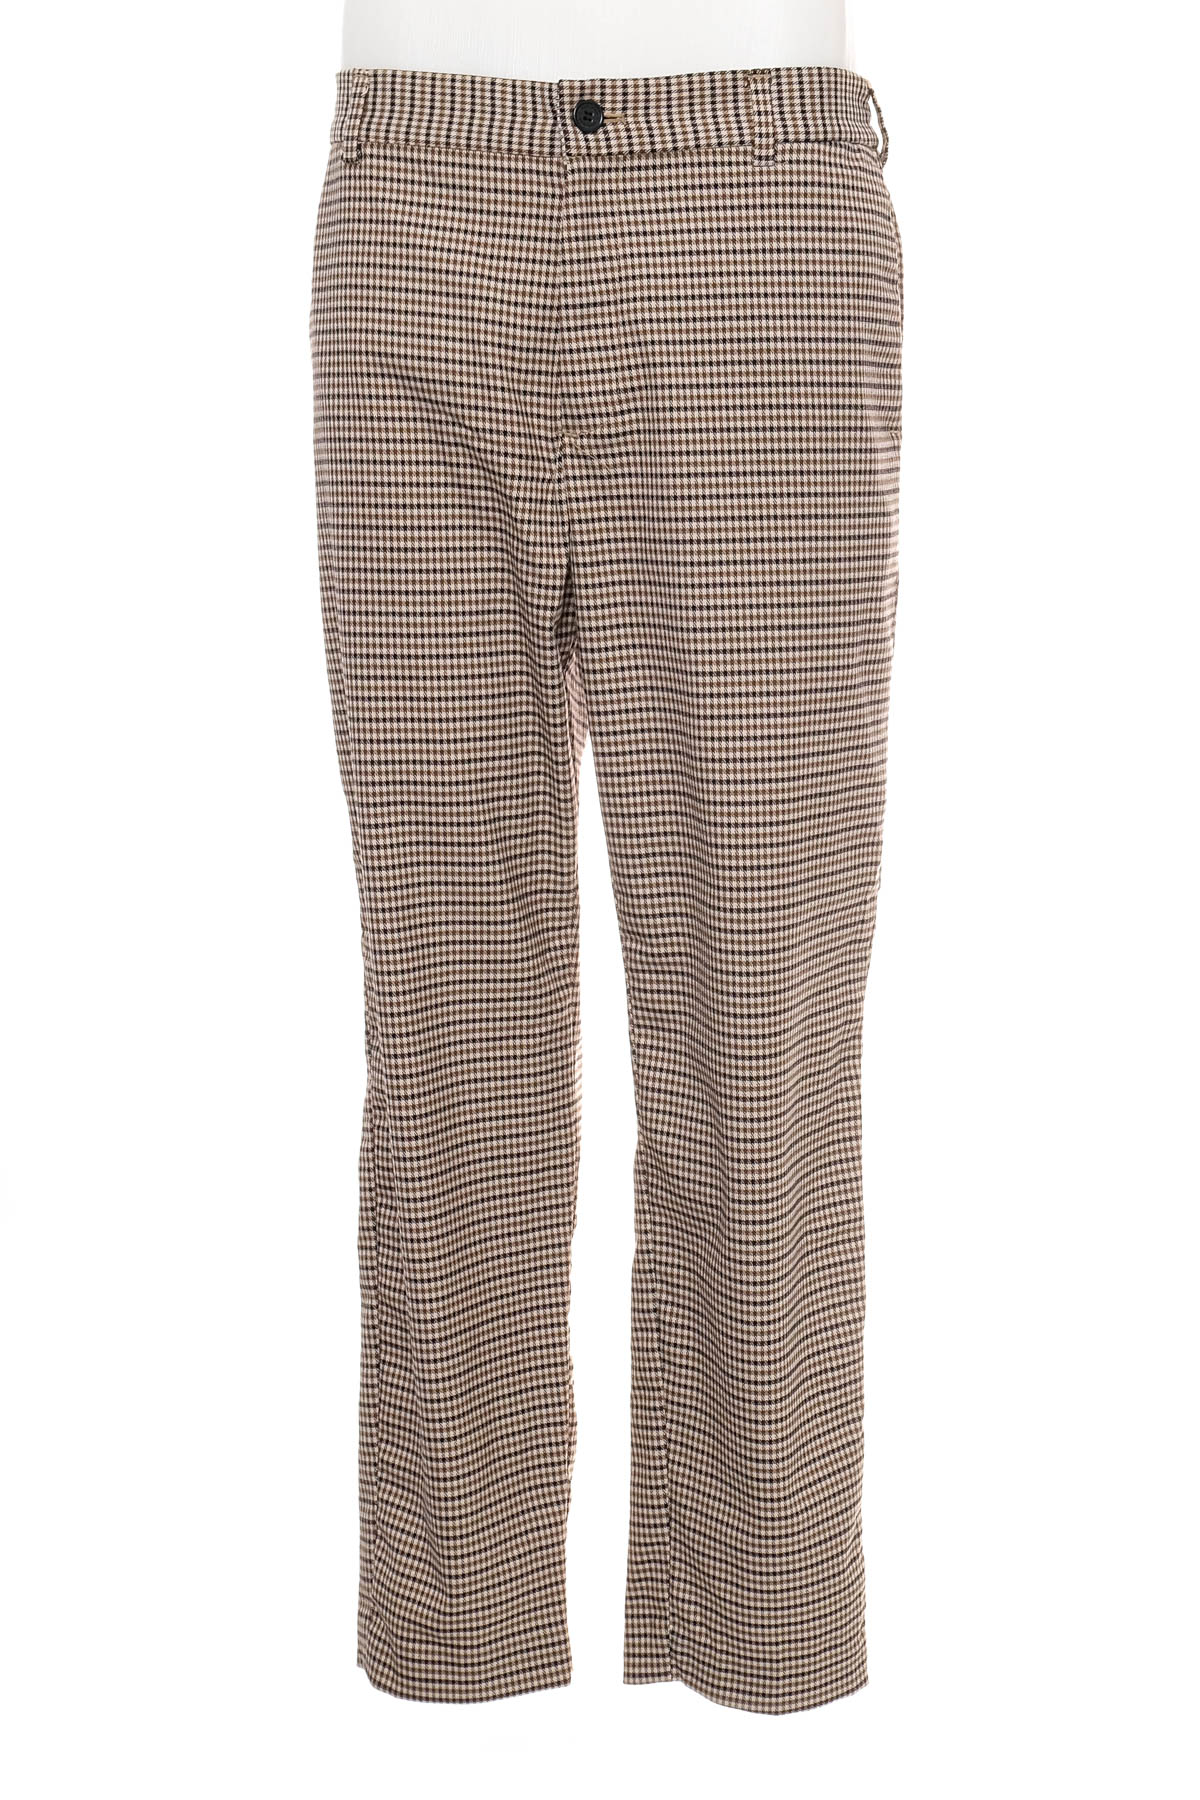 Pantalon pentru bărbați - H&M - 0